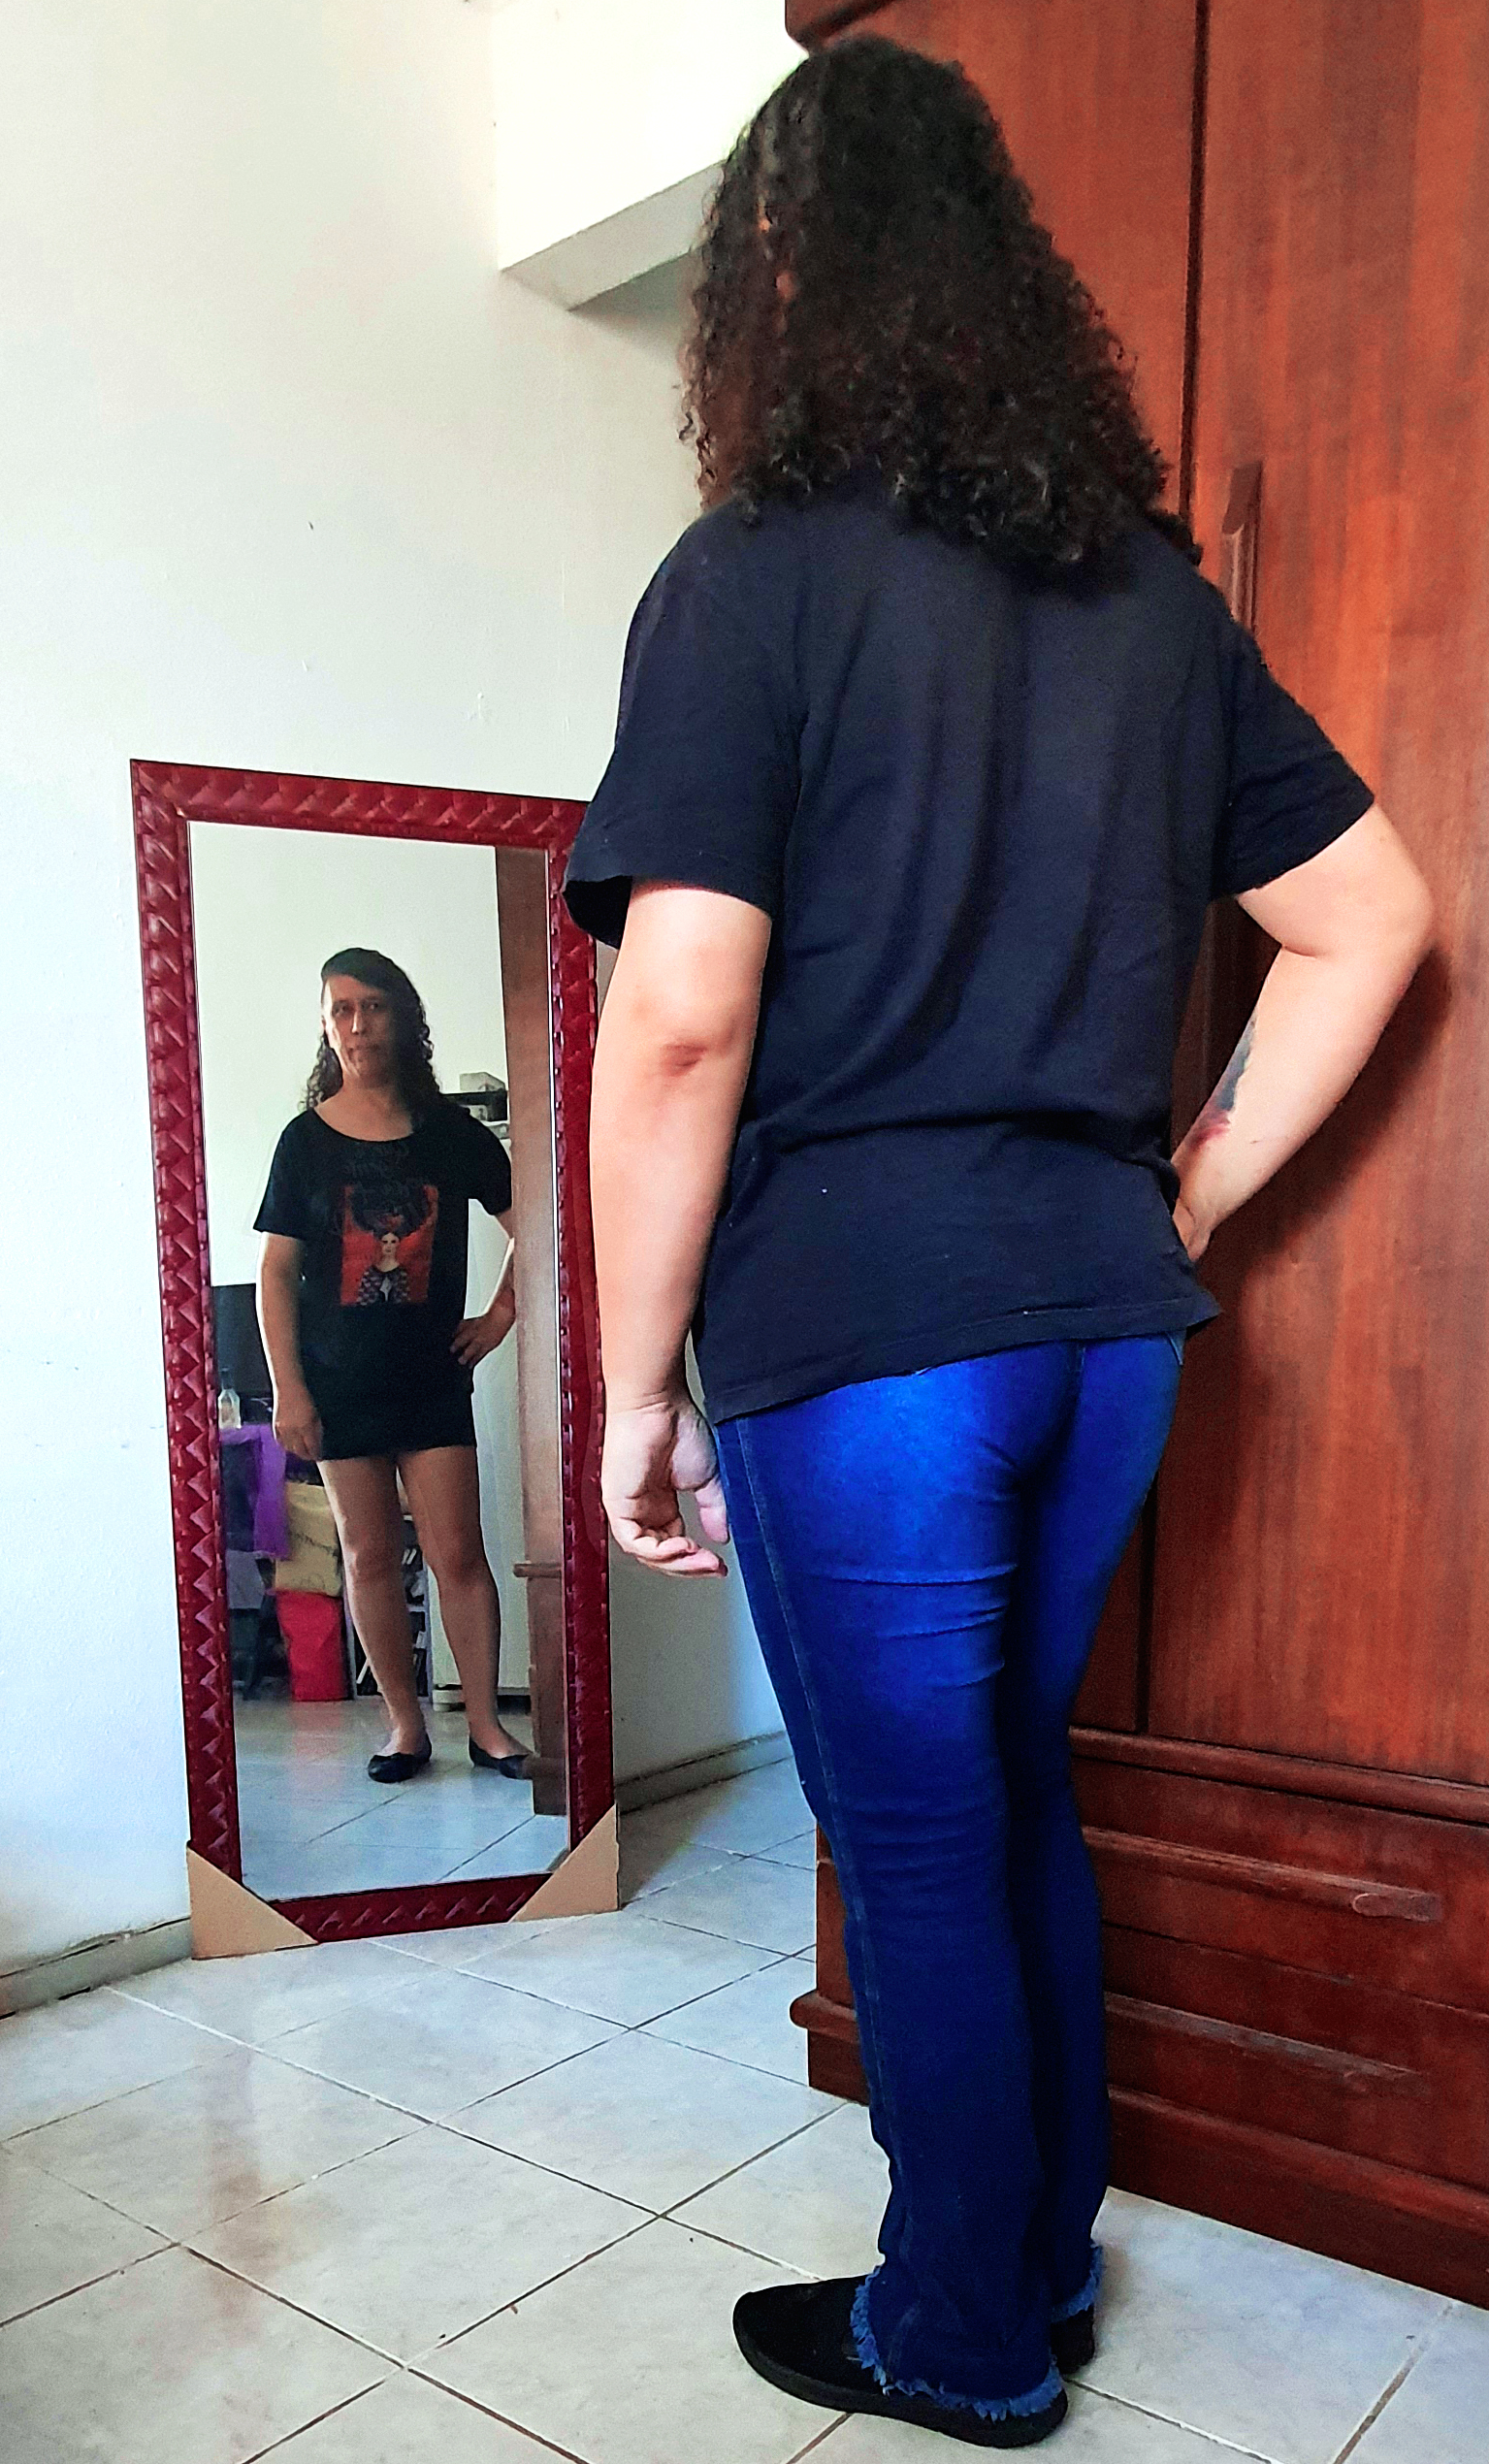 Pessoa se olhando no espelho, usando camisa preta, calça jeans azul e tênis. O reflexo no espelho está usando blusa preta, minissaia preta e sapatilhas.